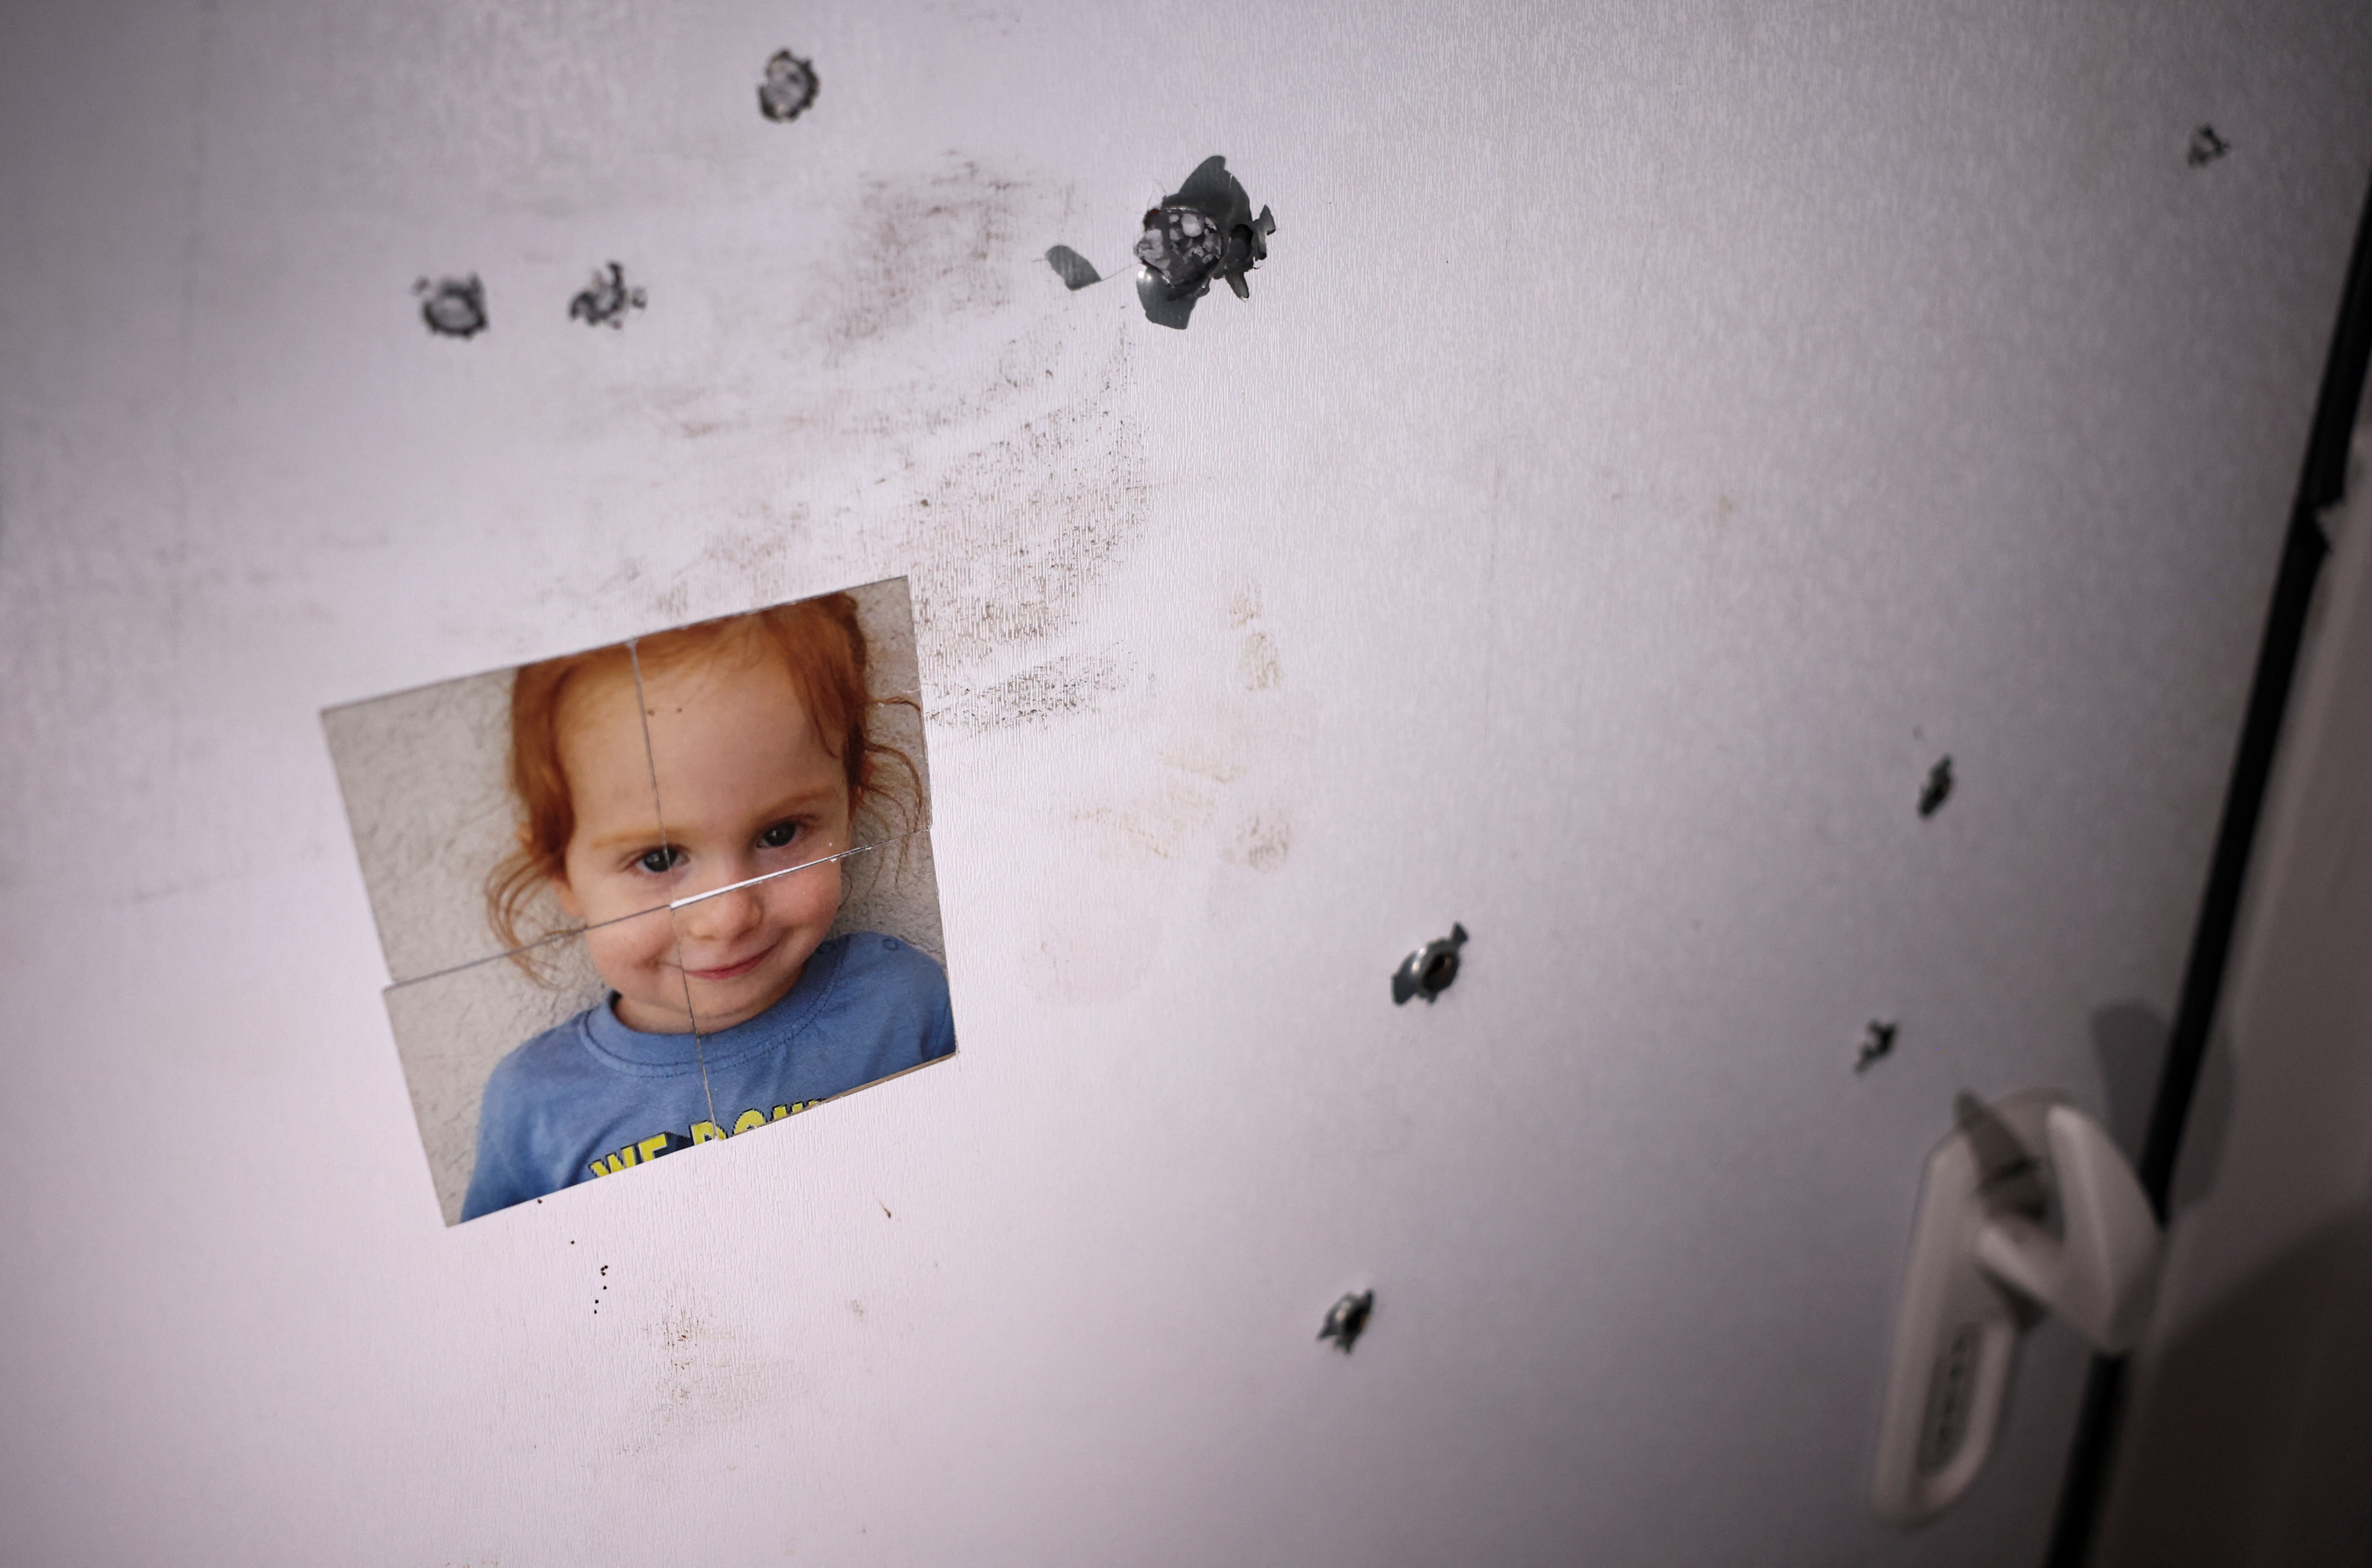 An der Tür eines Sicherheitsraums klebt ein Bild eines entführten Mädchens, das nach dem Massaker von Kugeln getroffen wurde